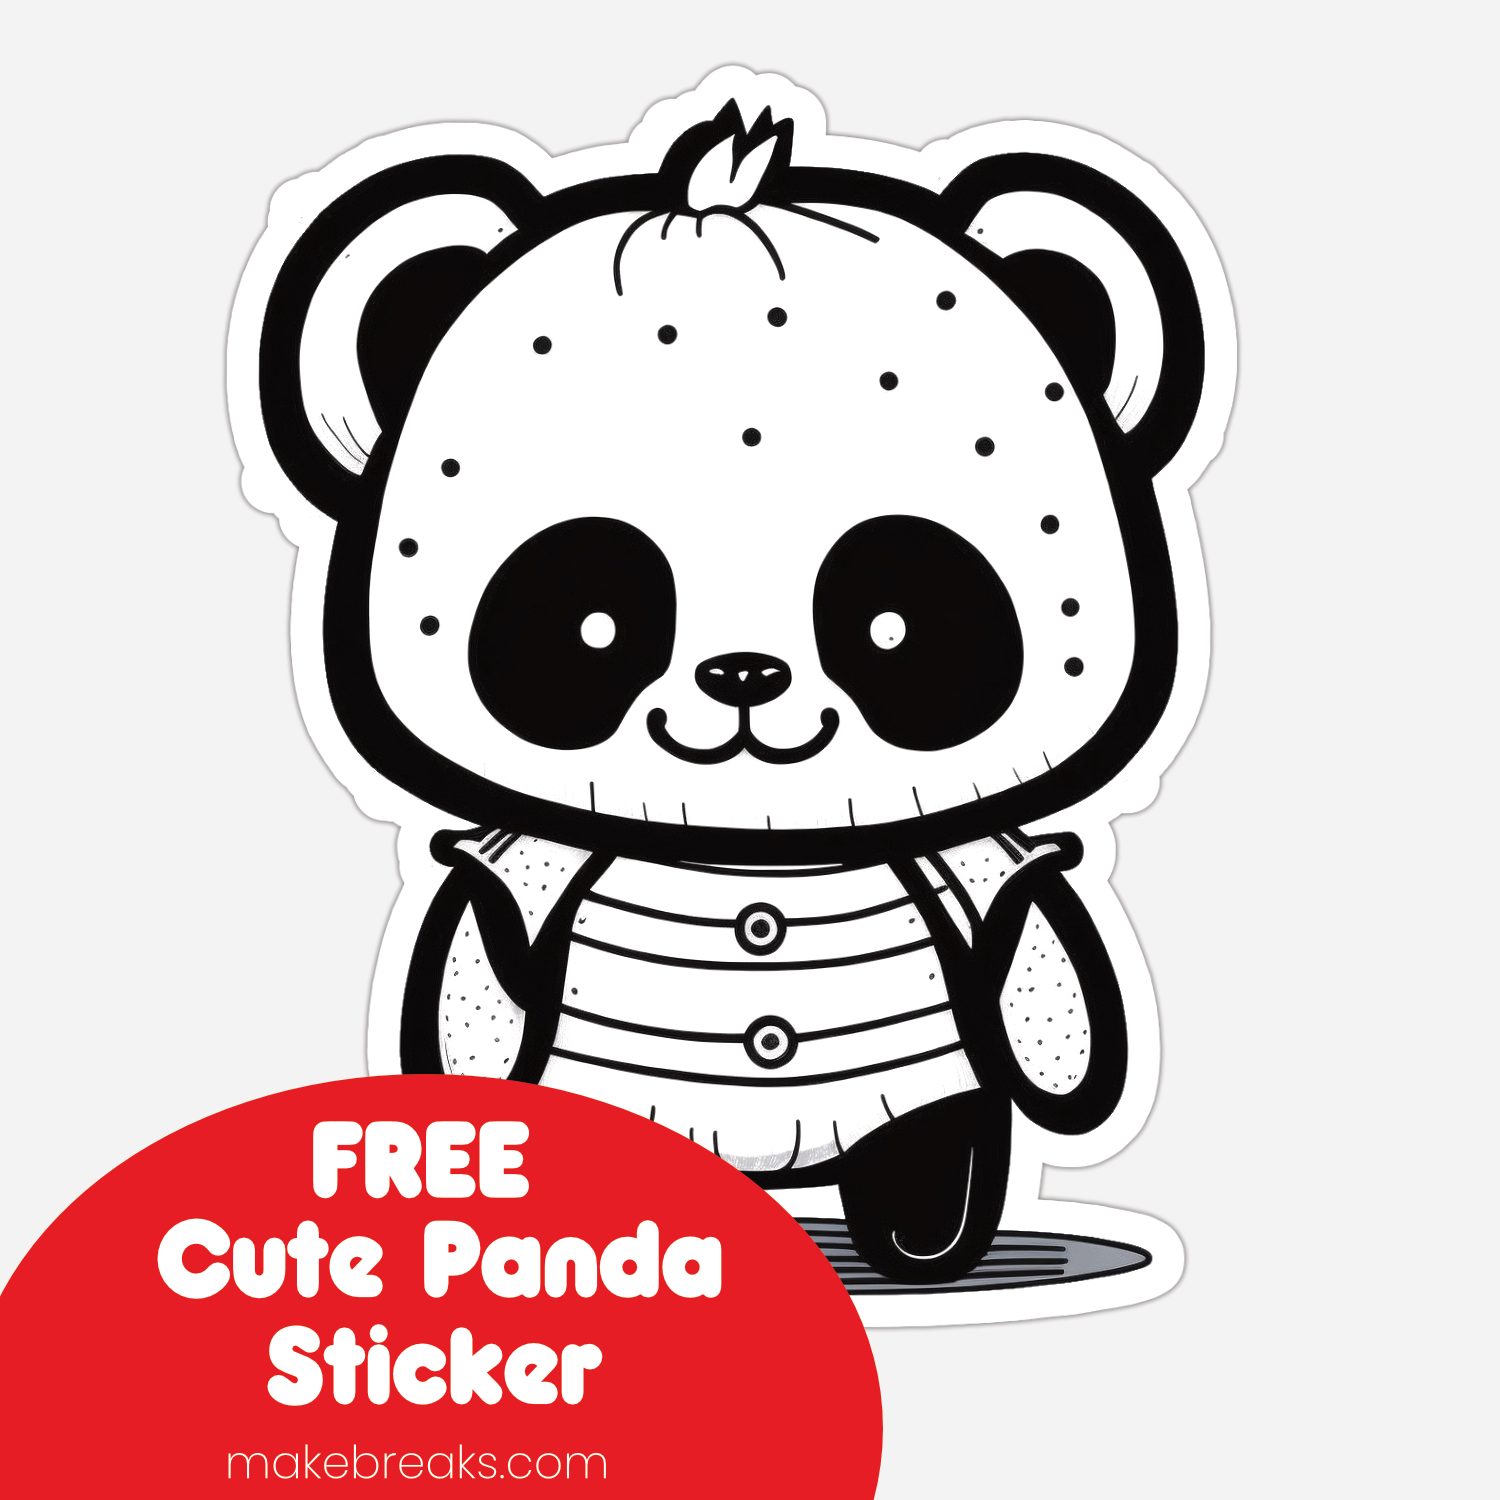 Free Cute Panda Sticker Clipart